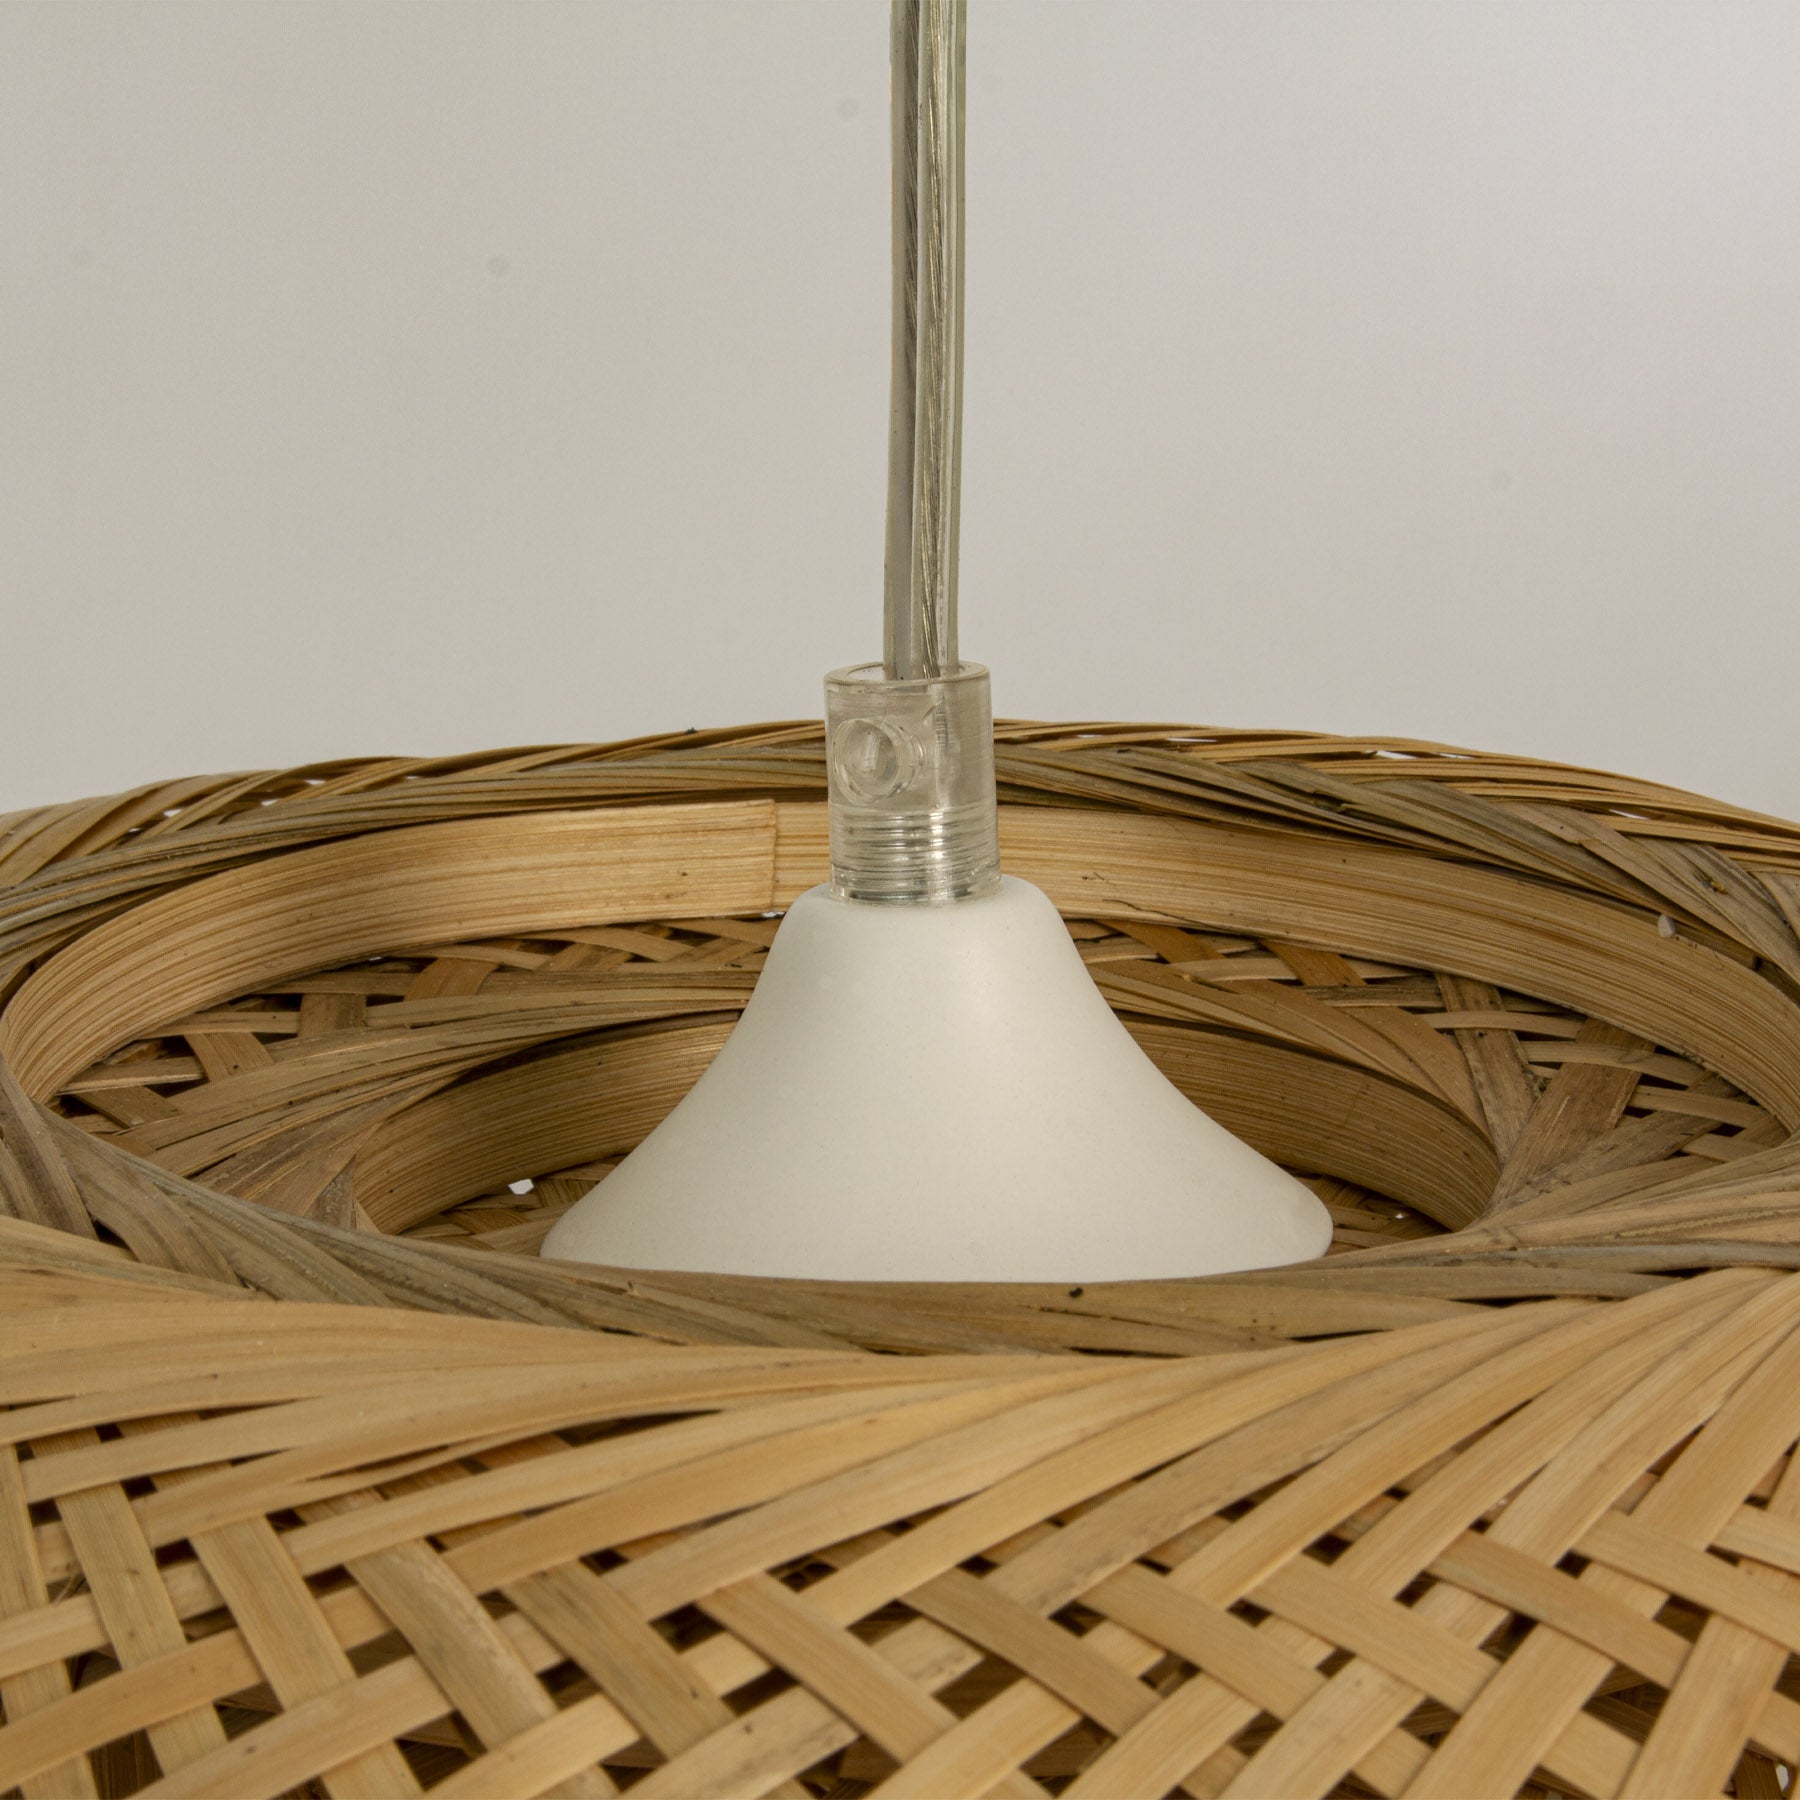 Opphenget til Malacca taklampe pendel i natur bambus flettet rotting diameter 45cm - Aneta belysning